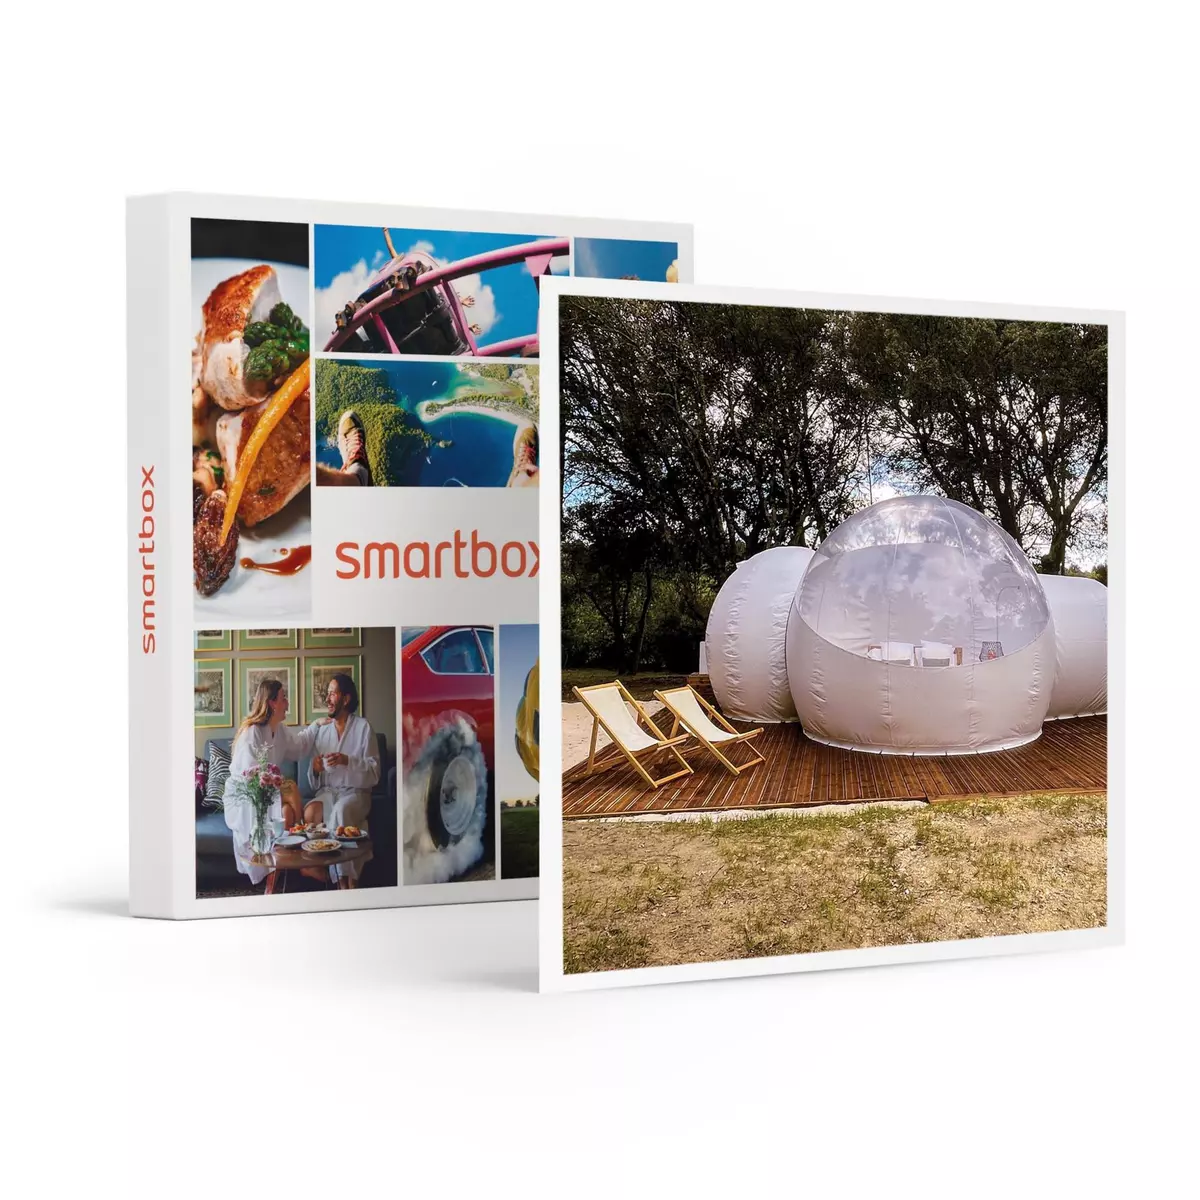 Smartbox Séjour insolite de 3 jours en bulle près d'Avignon - Coffret Cadeau Séjour